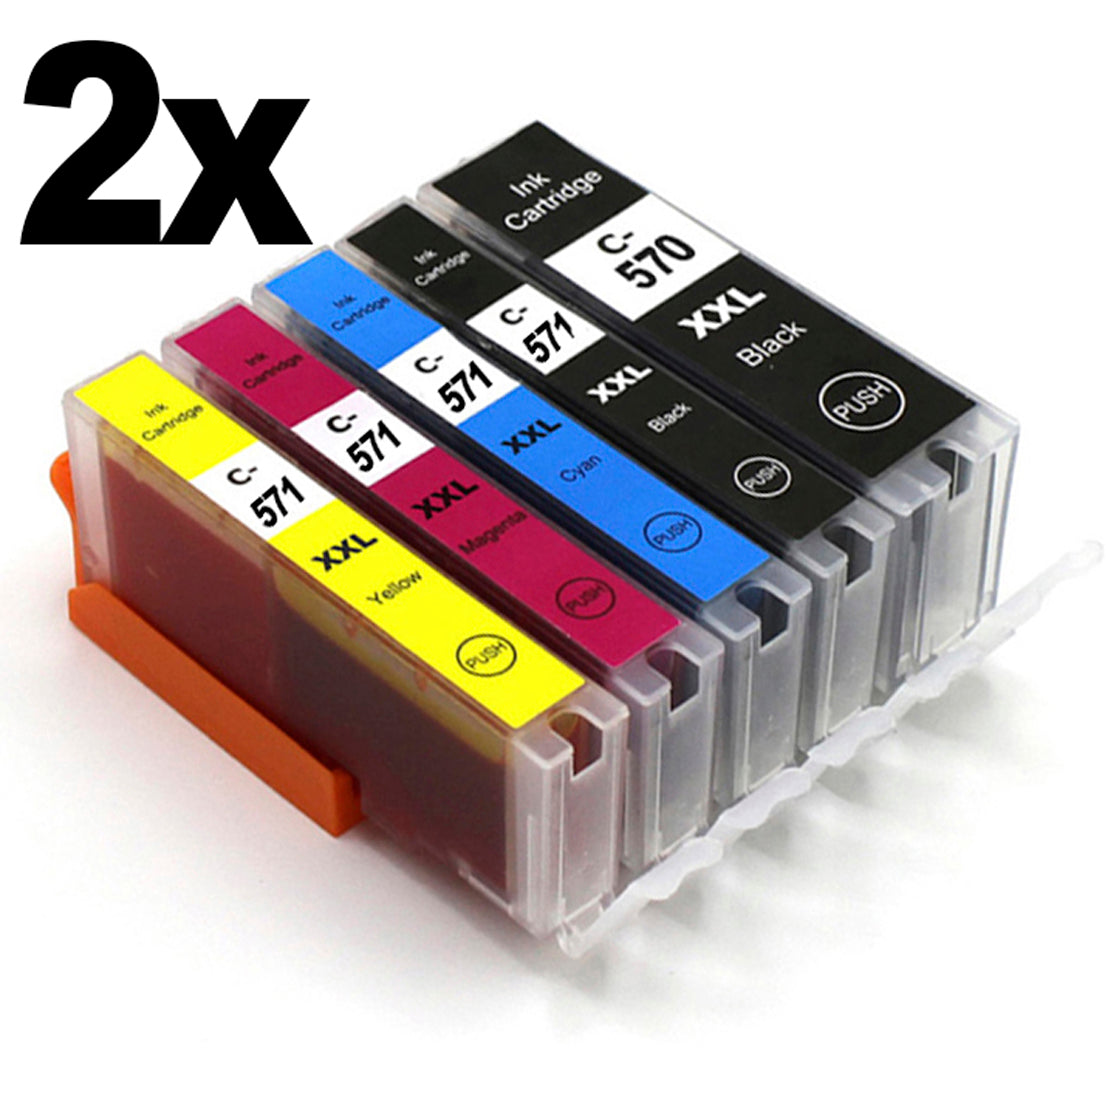 10 Druckeratronen bestehend aus 2 kompletten Setst für deinen Canon MG6850. Jede Farbe ist in diesem Set 2 mal enthalten.Günstige kompatible Druckerpatronen für deinen Pixma MG6850.